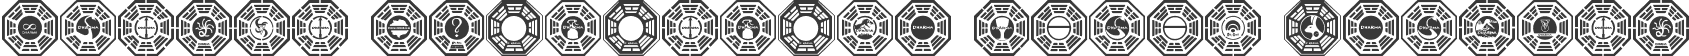 Dharma Initiative Logos Regular